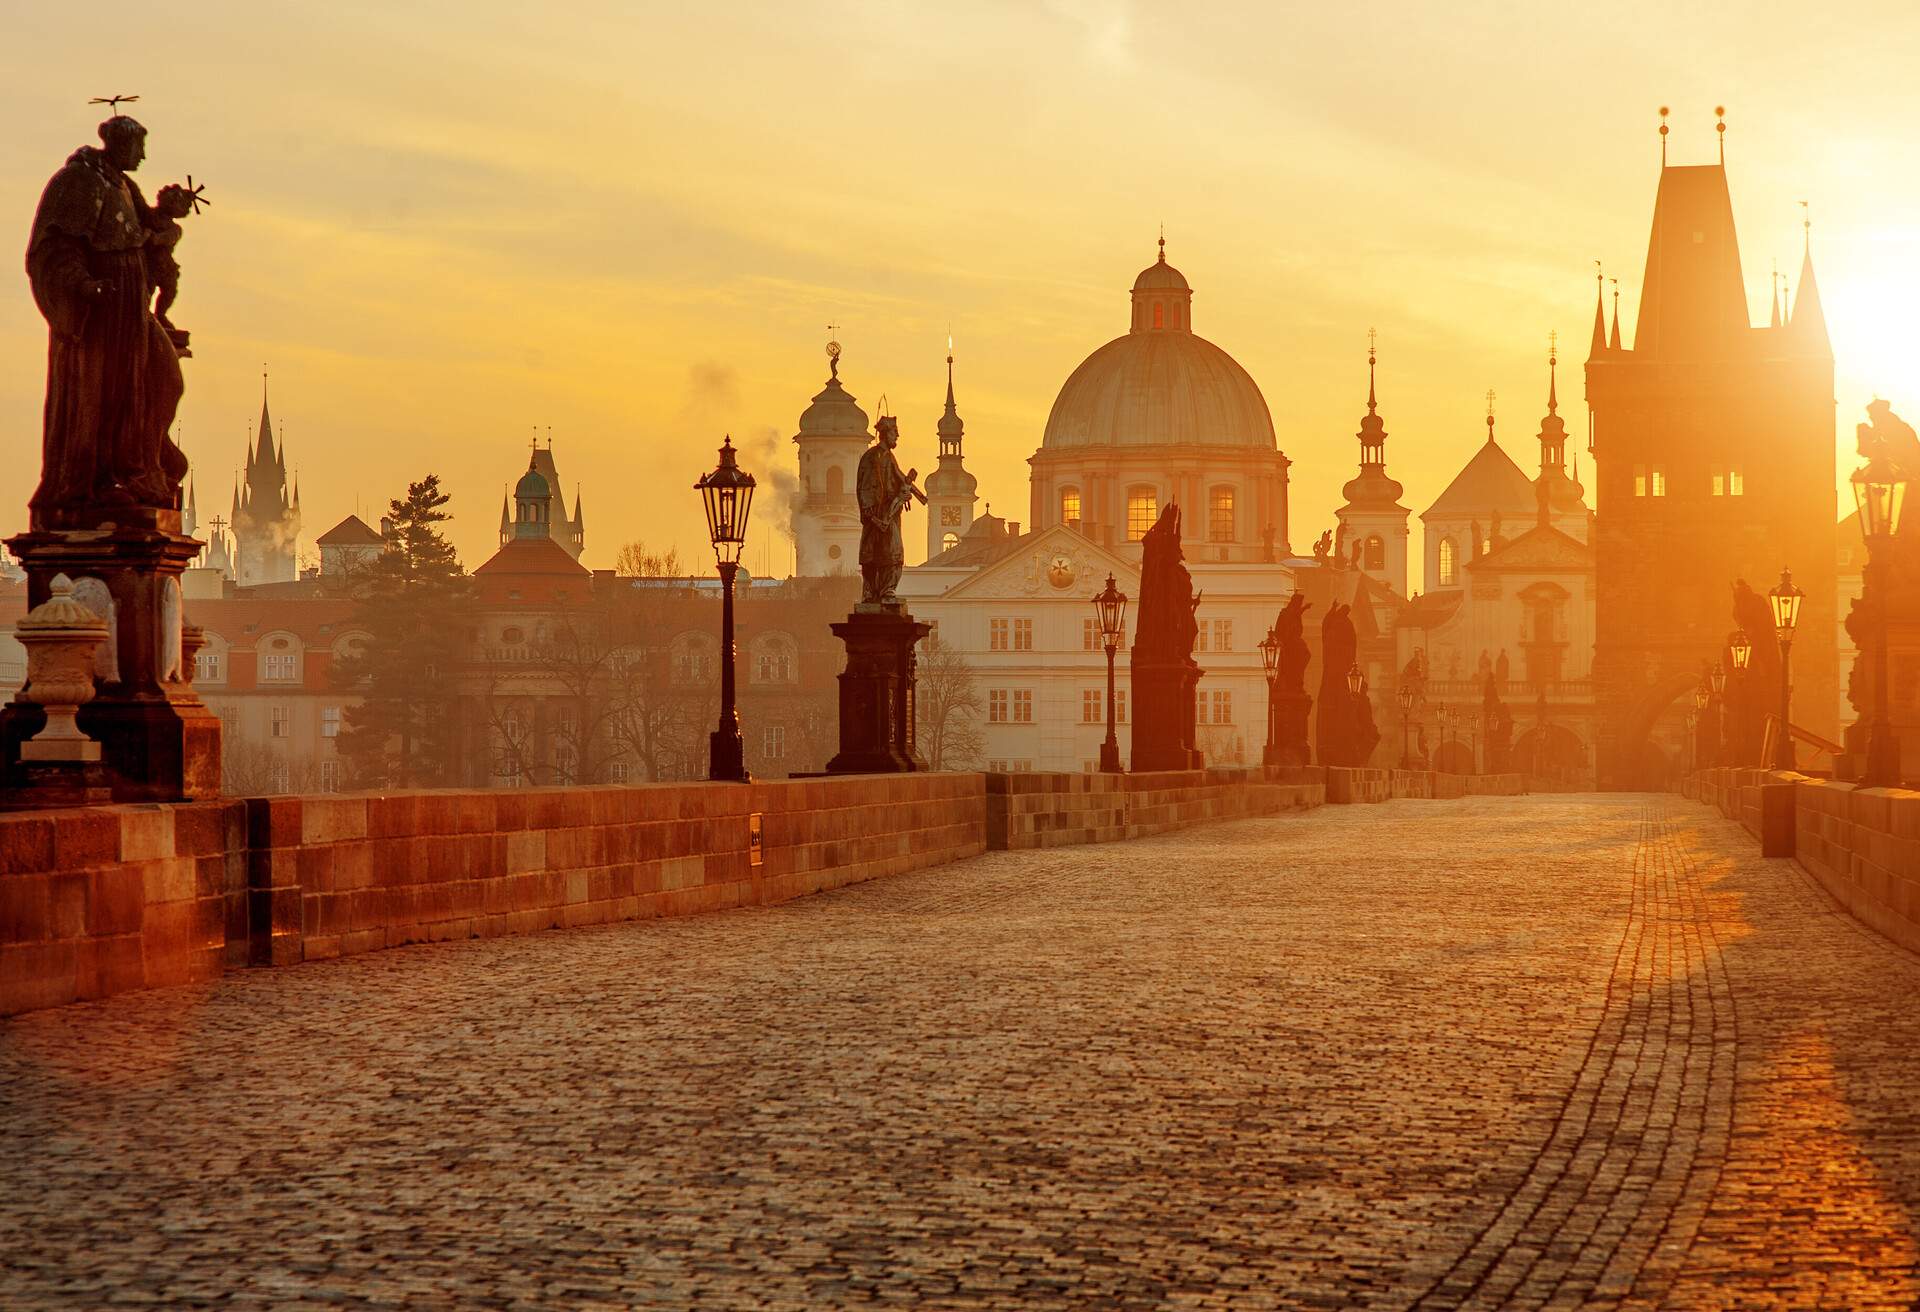 Charles Bridge scenic view at sunrise, Prague, Czech Republic, Europe; Shutterstock ID 763285693; Purpose: Newsletter; Brand (KAYAK, Momondo, Any): Any